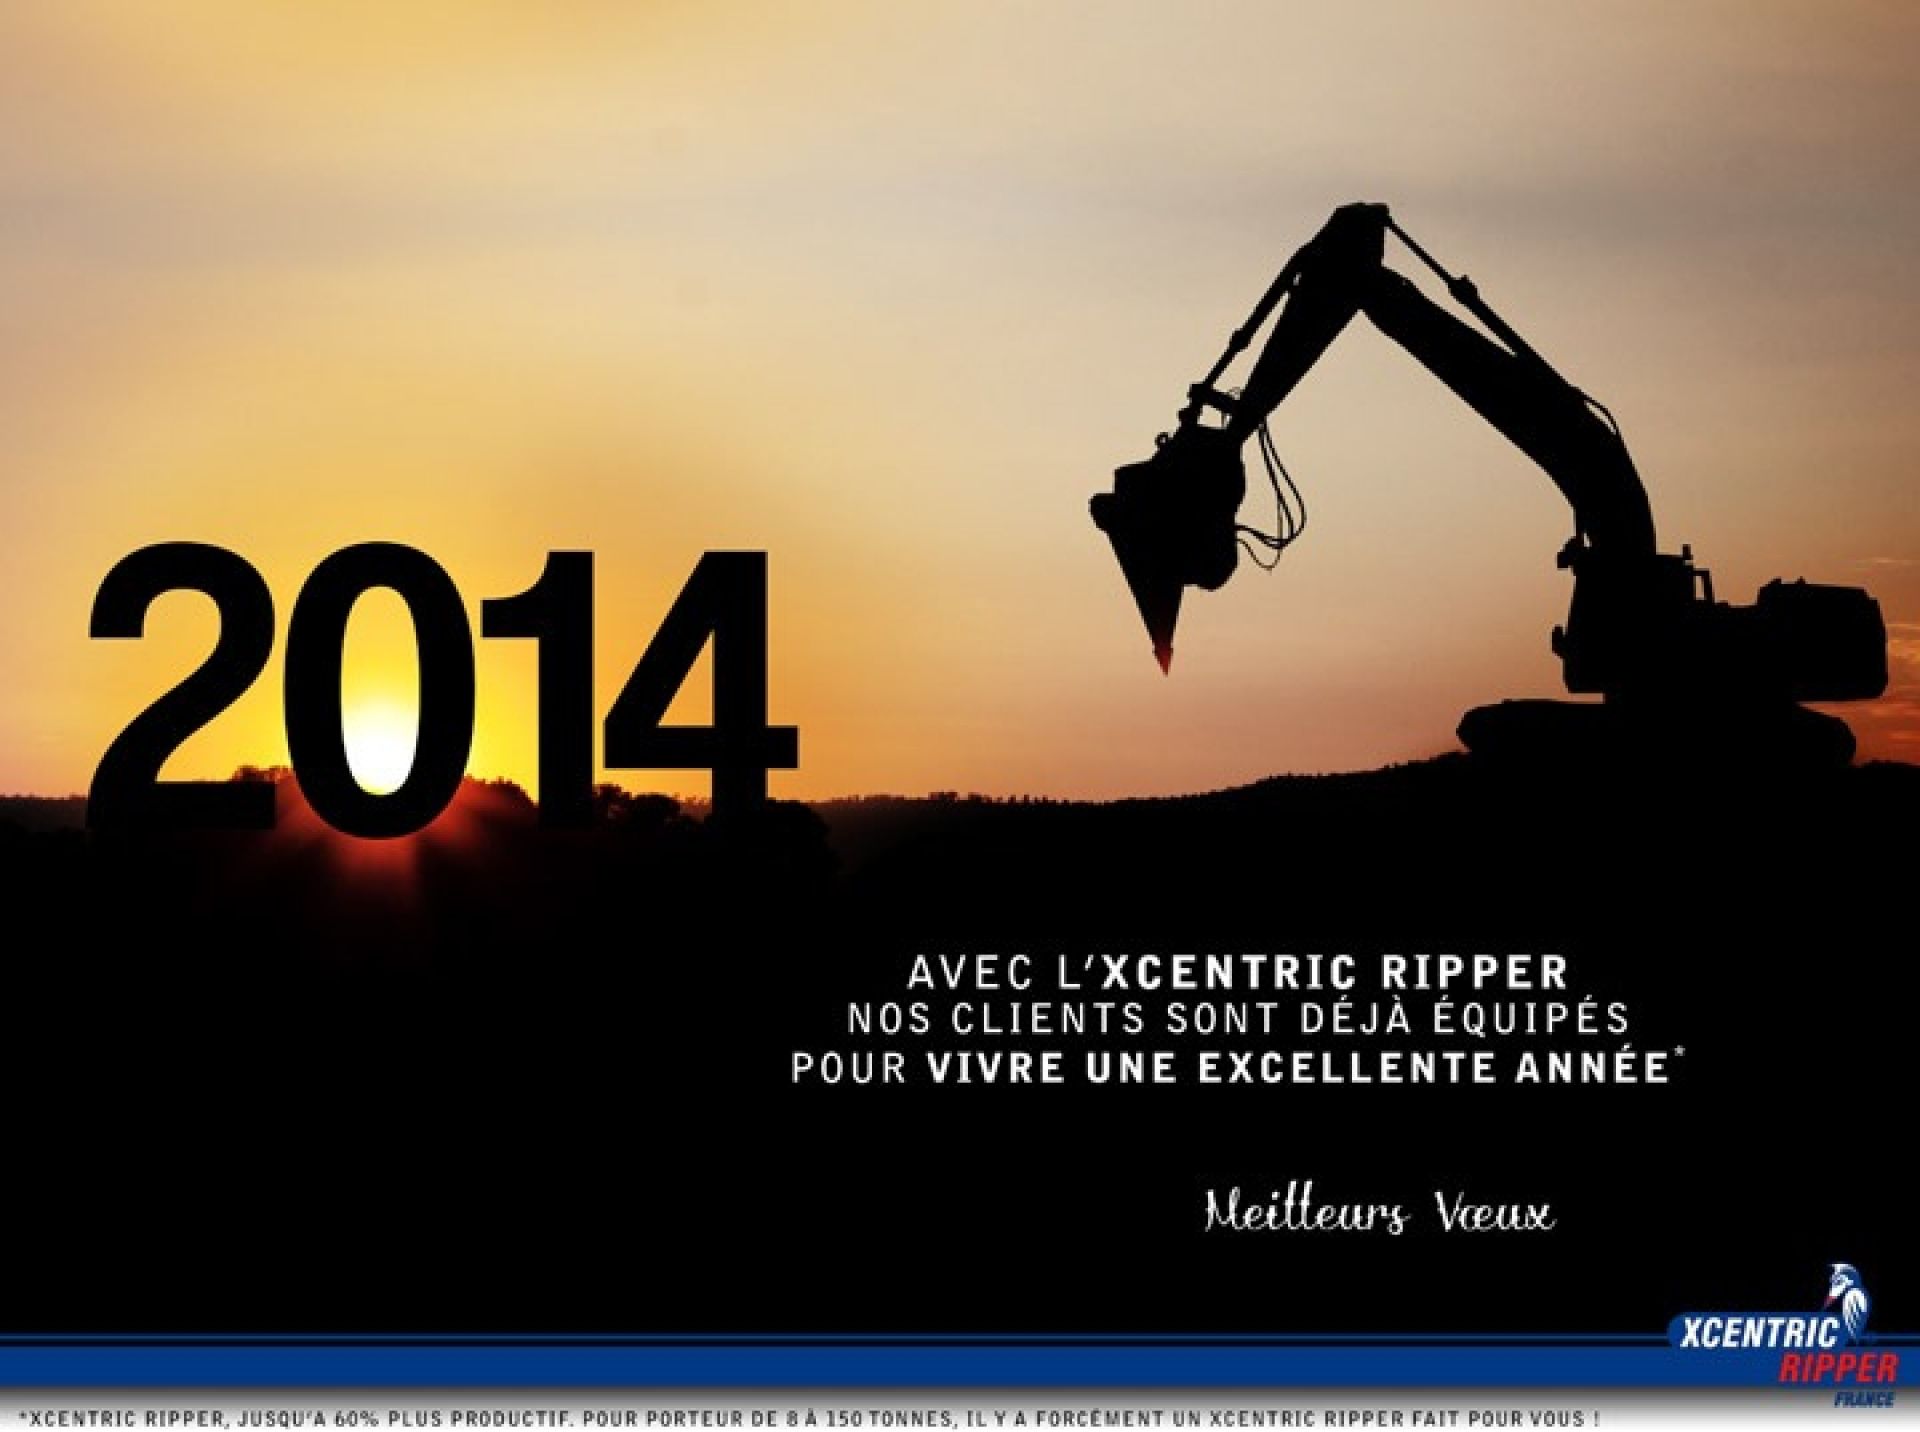 Xcentric Ripper France - Bonne année 2014